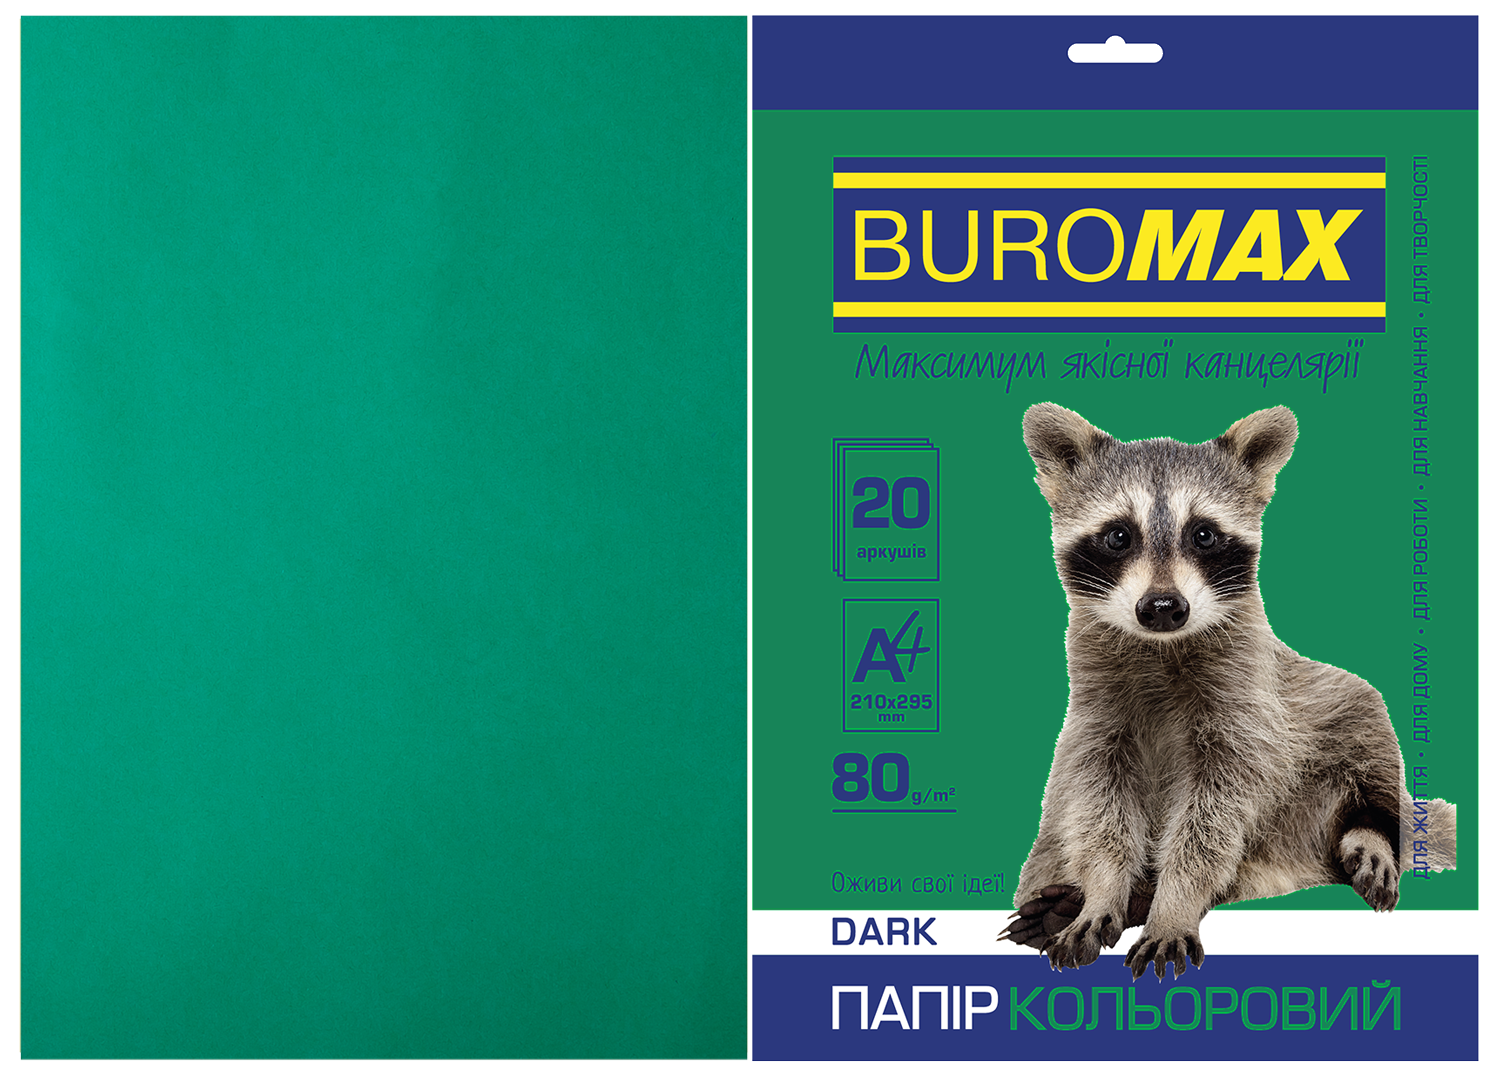 Набор цветной бумаги Buromax DARK А4, 80 г/м2, 20 листов, темно-зеленый - №1